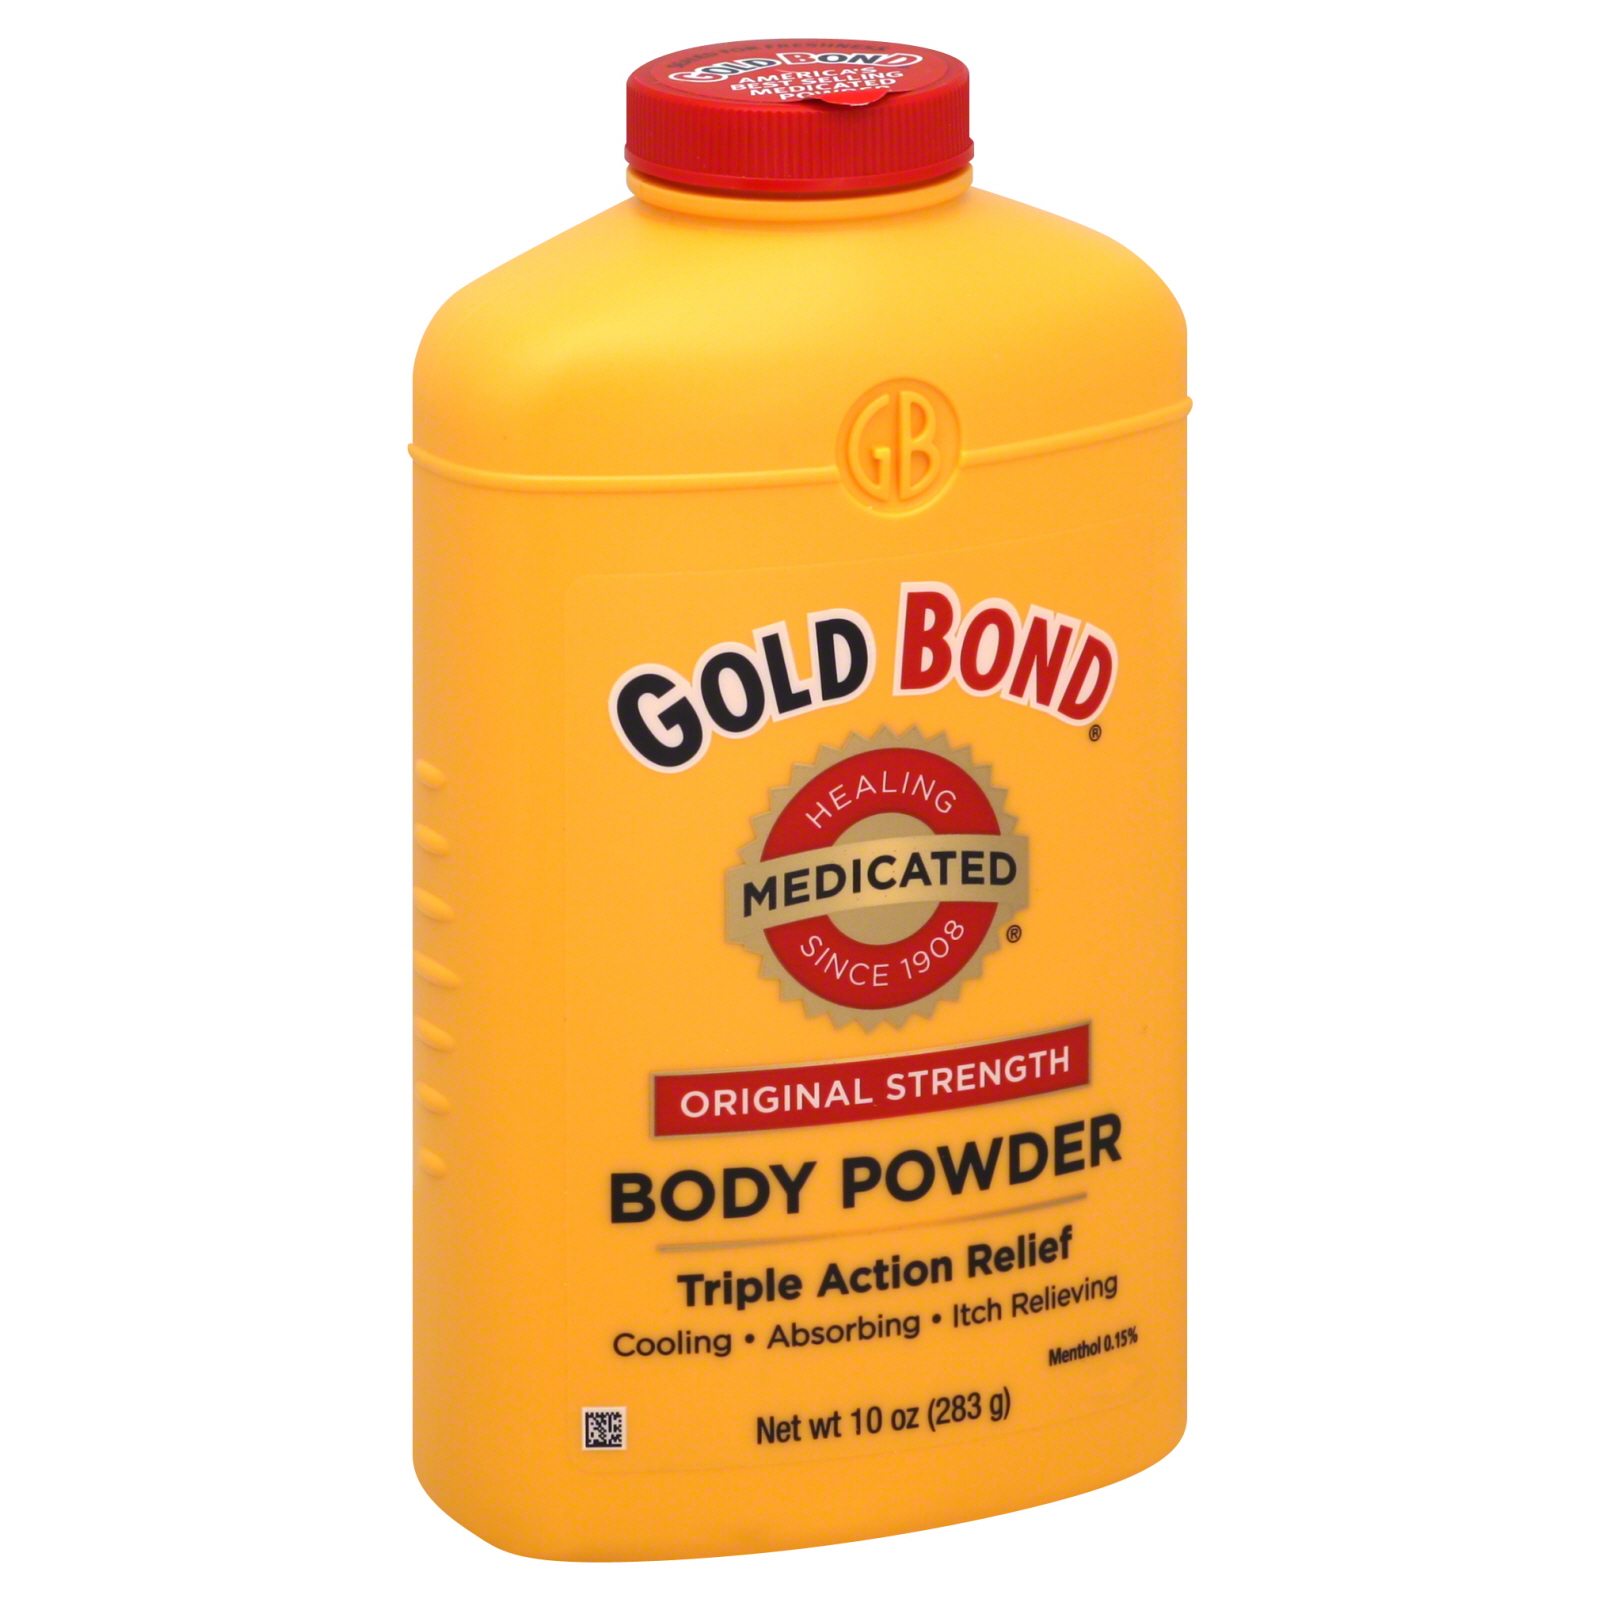 Body Powder, Medicated, Original Strength, 10 oz (283 g)